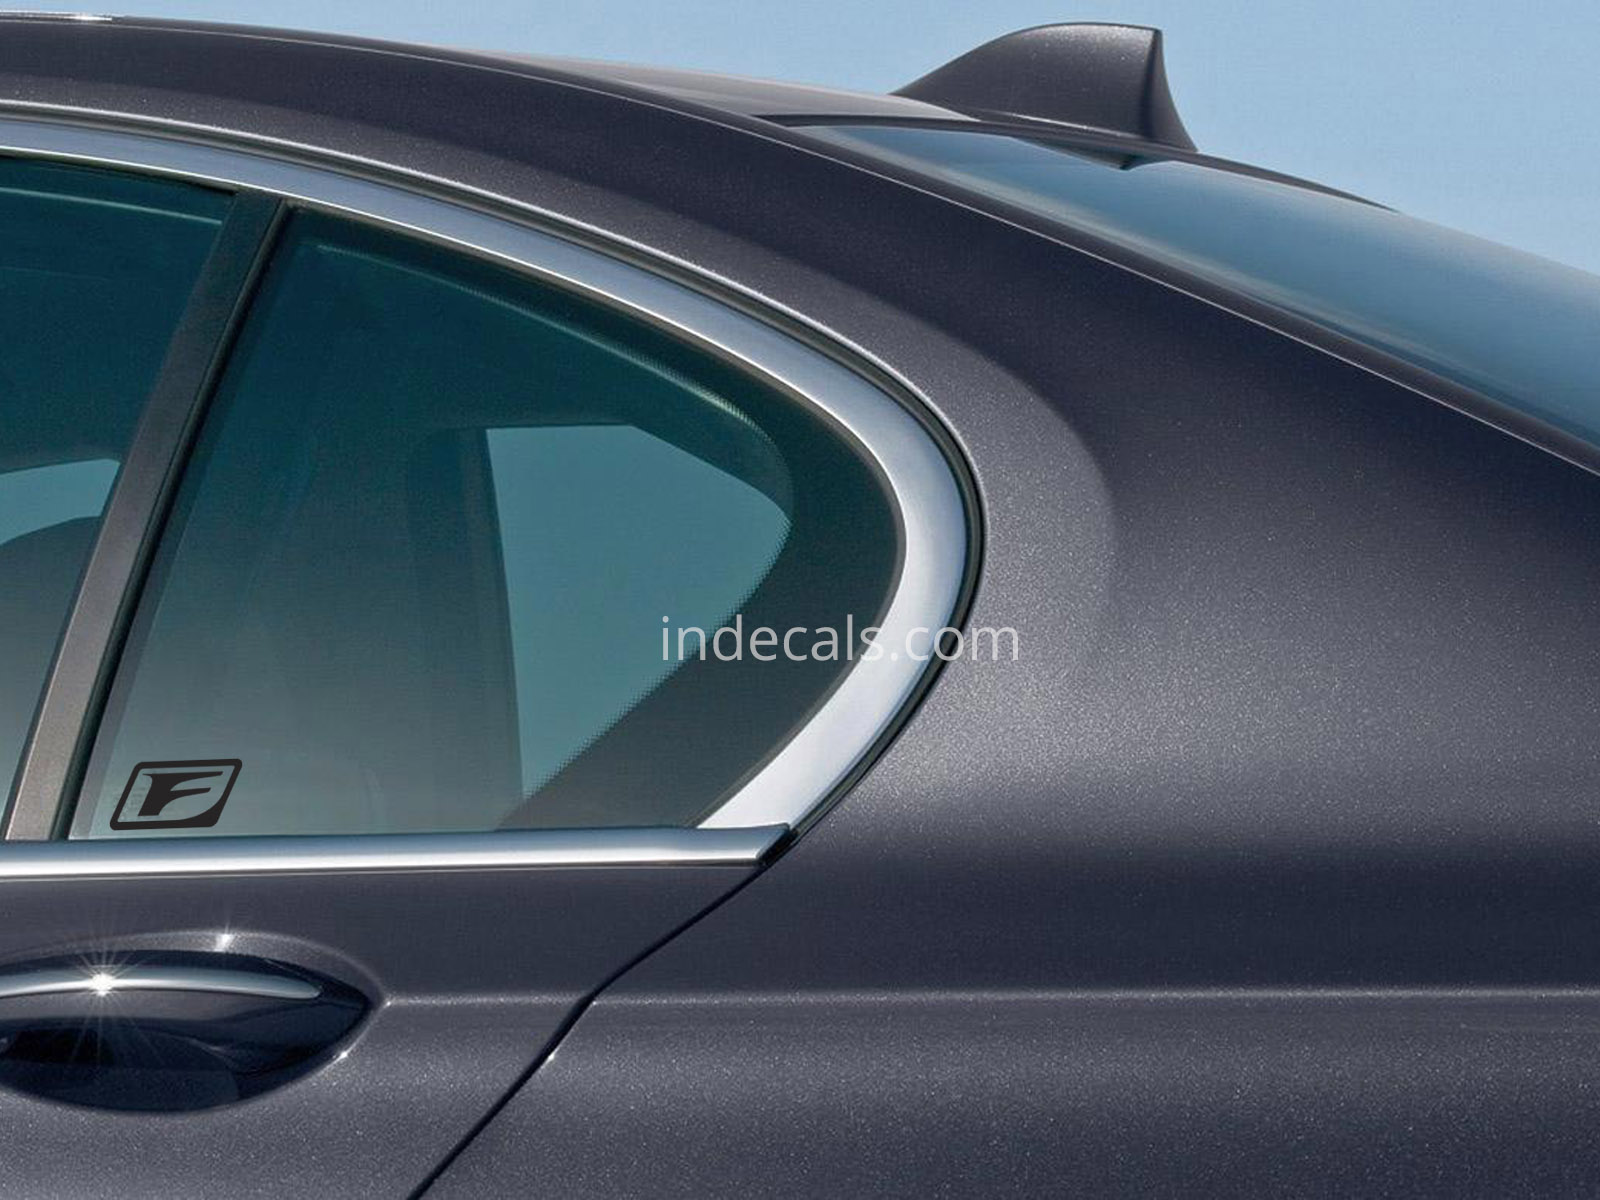 3 x Lexus F-sport Stickers for Rear Window - Black